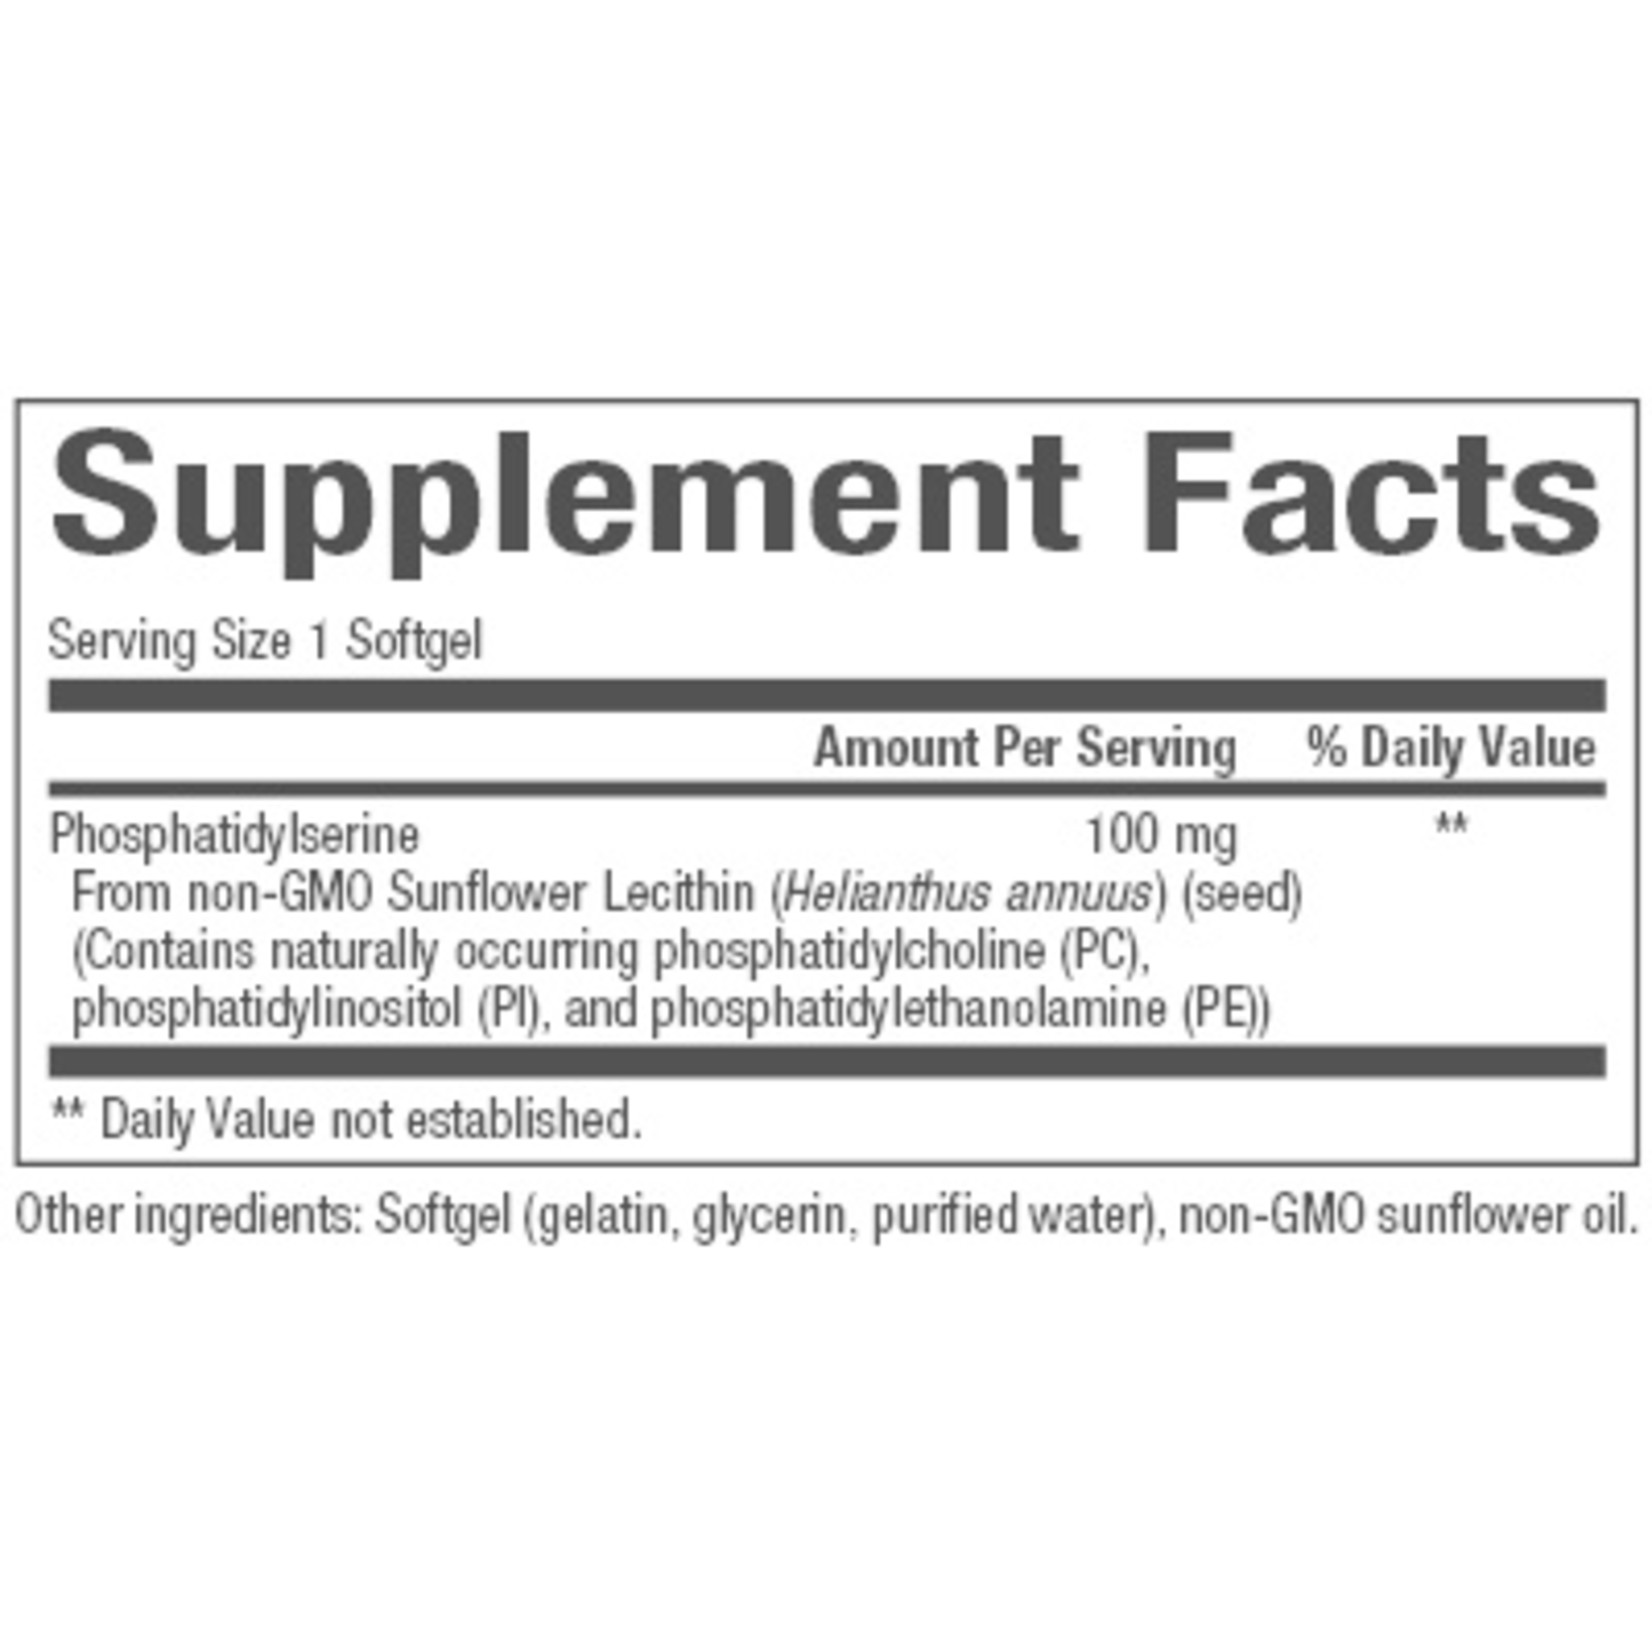 Natural Factors Natural Factors - PS IQ 25 mg - 60 Softgels